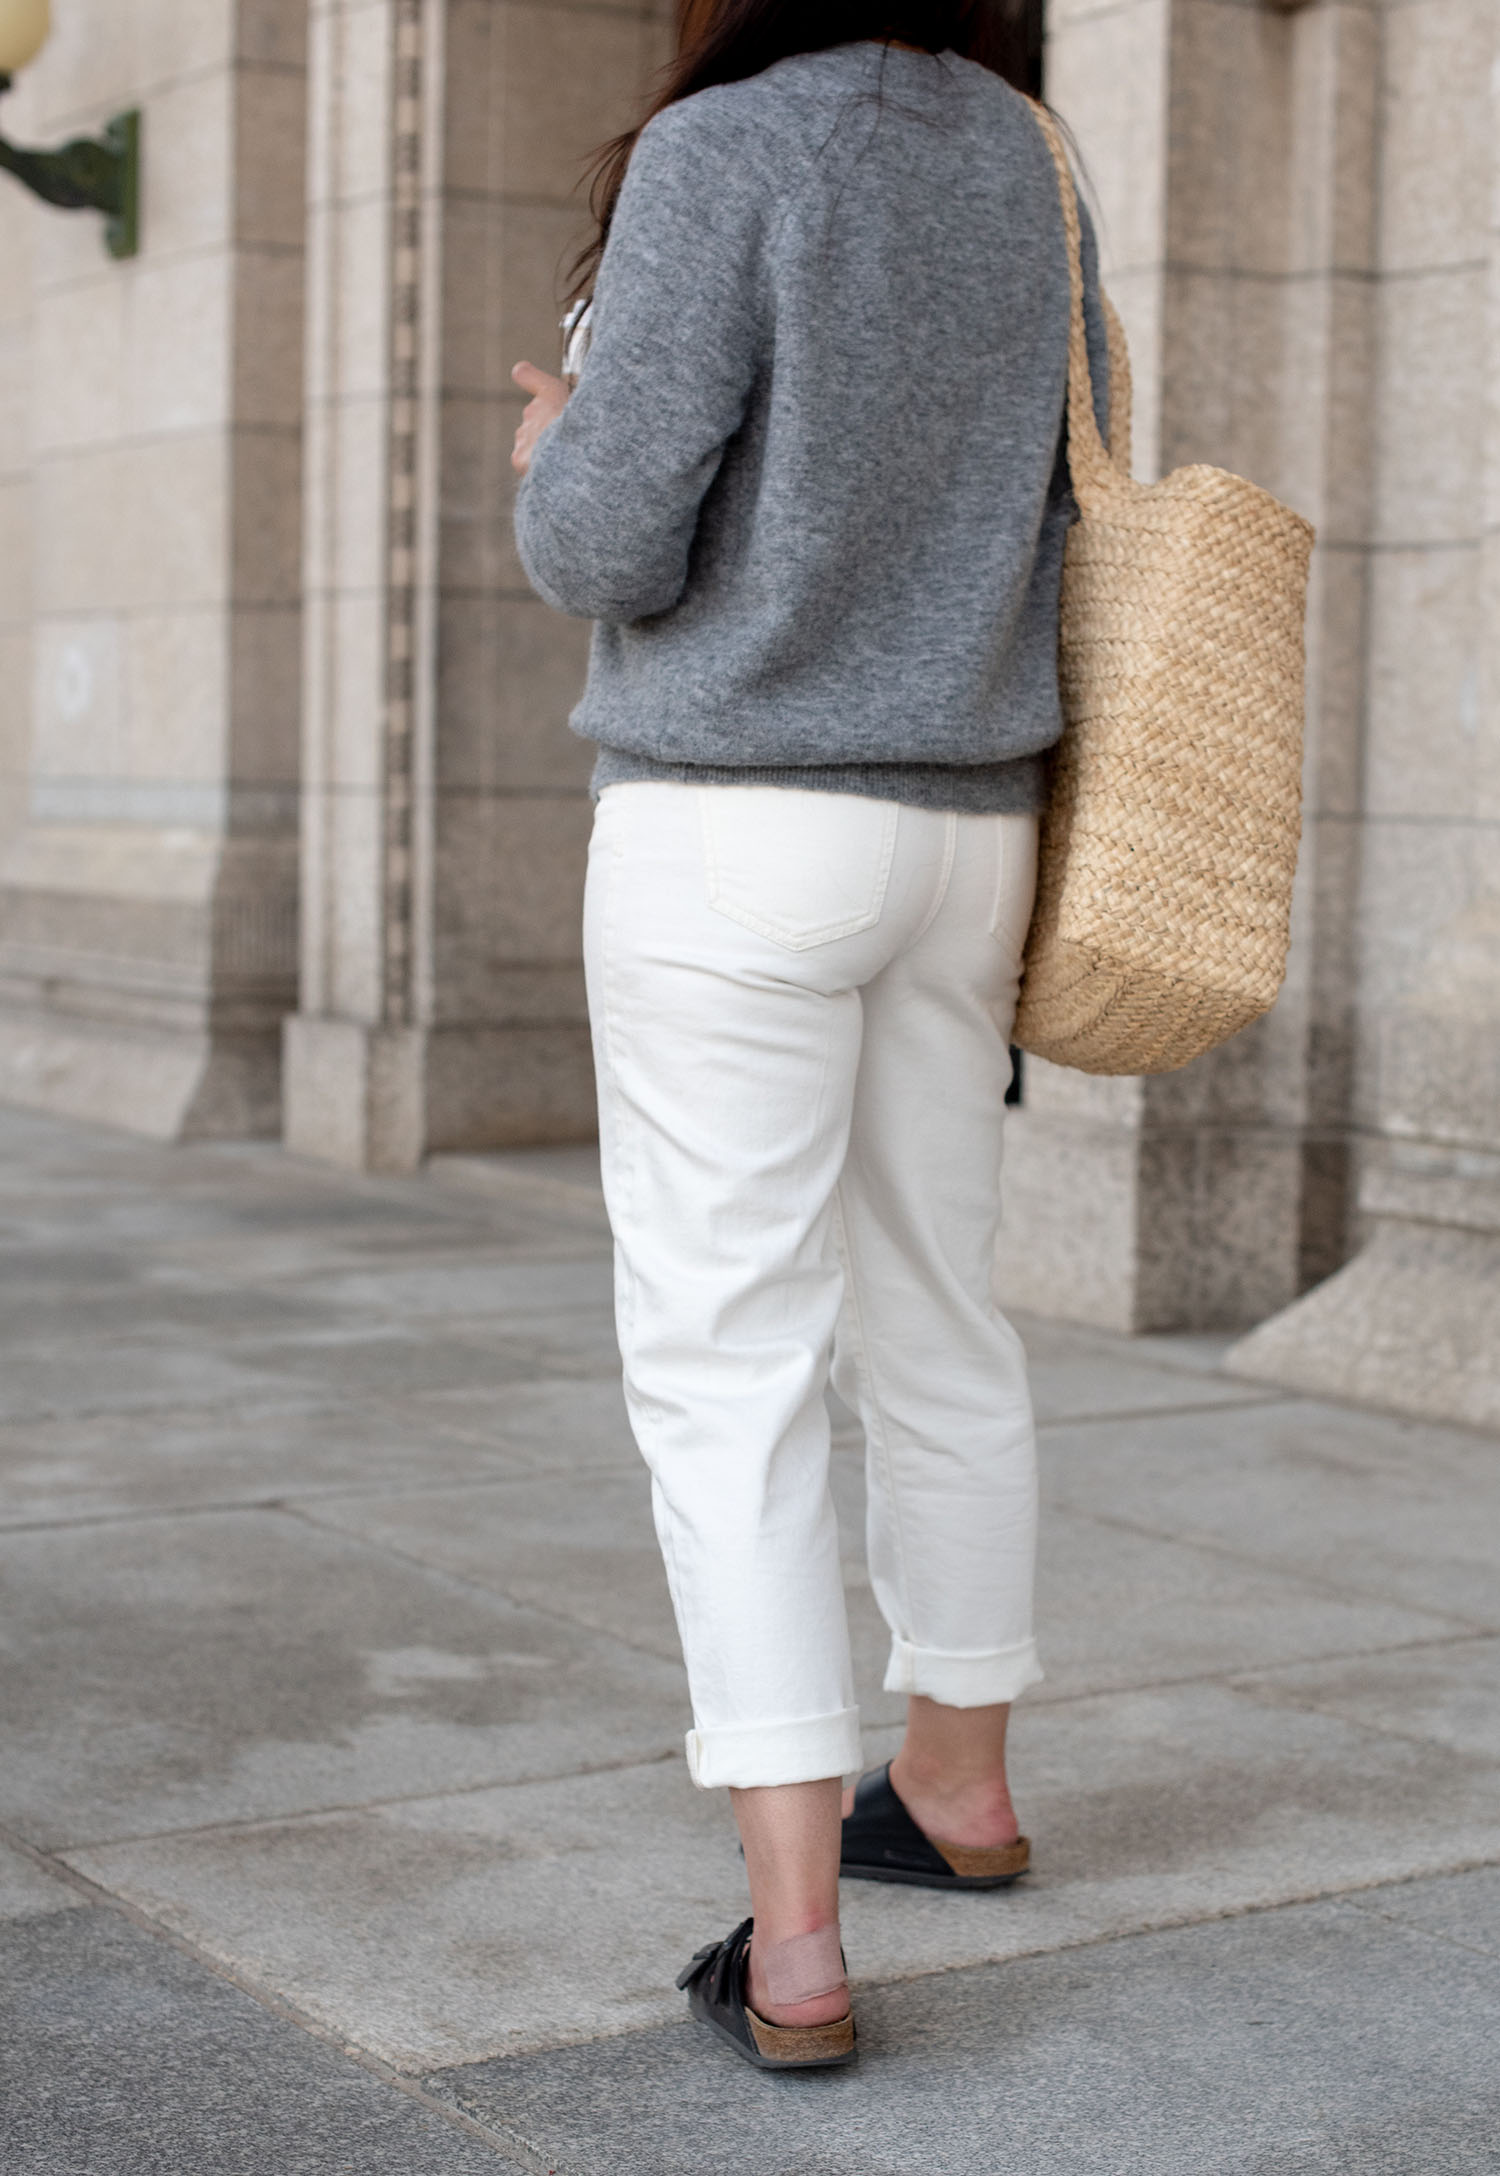 Coco & Vera - Zara white jeans, Zara Home tote, Birkenstocks sandals